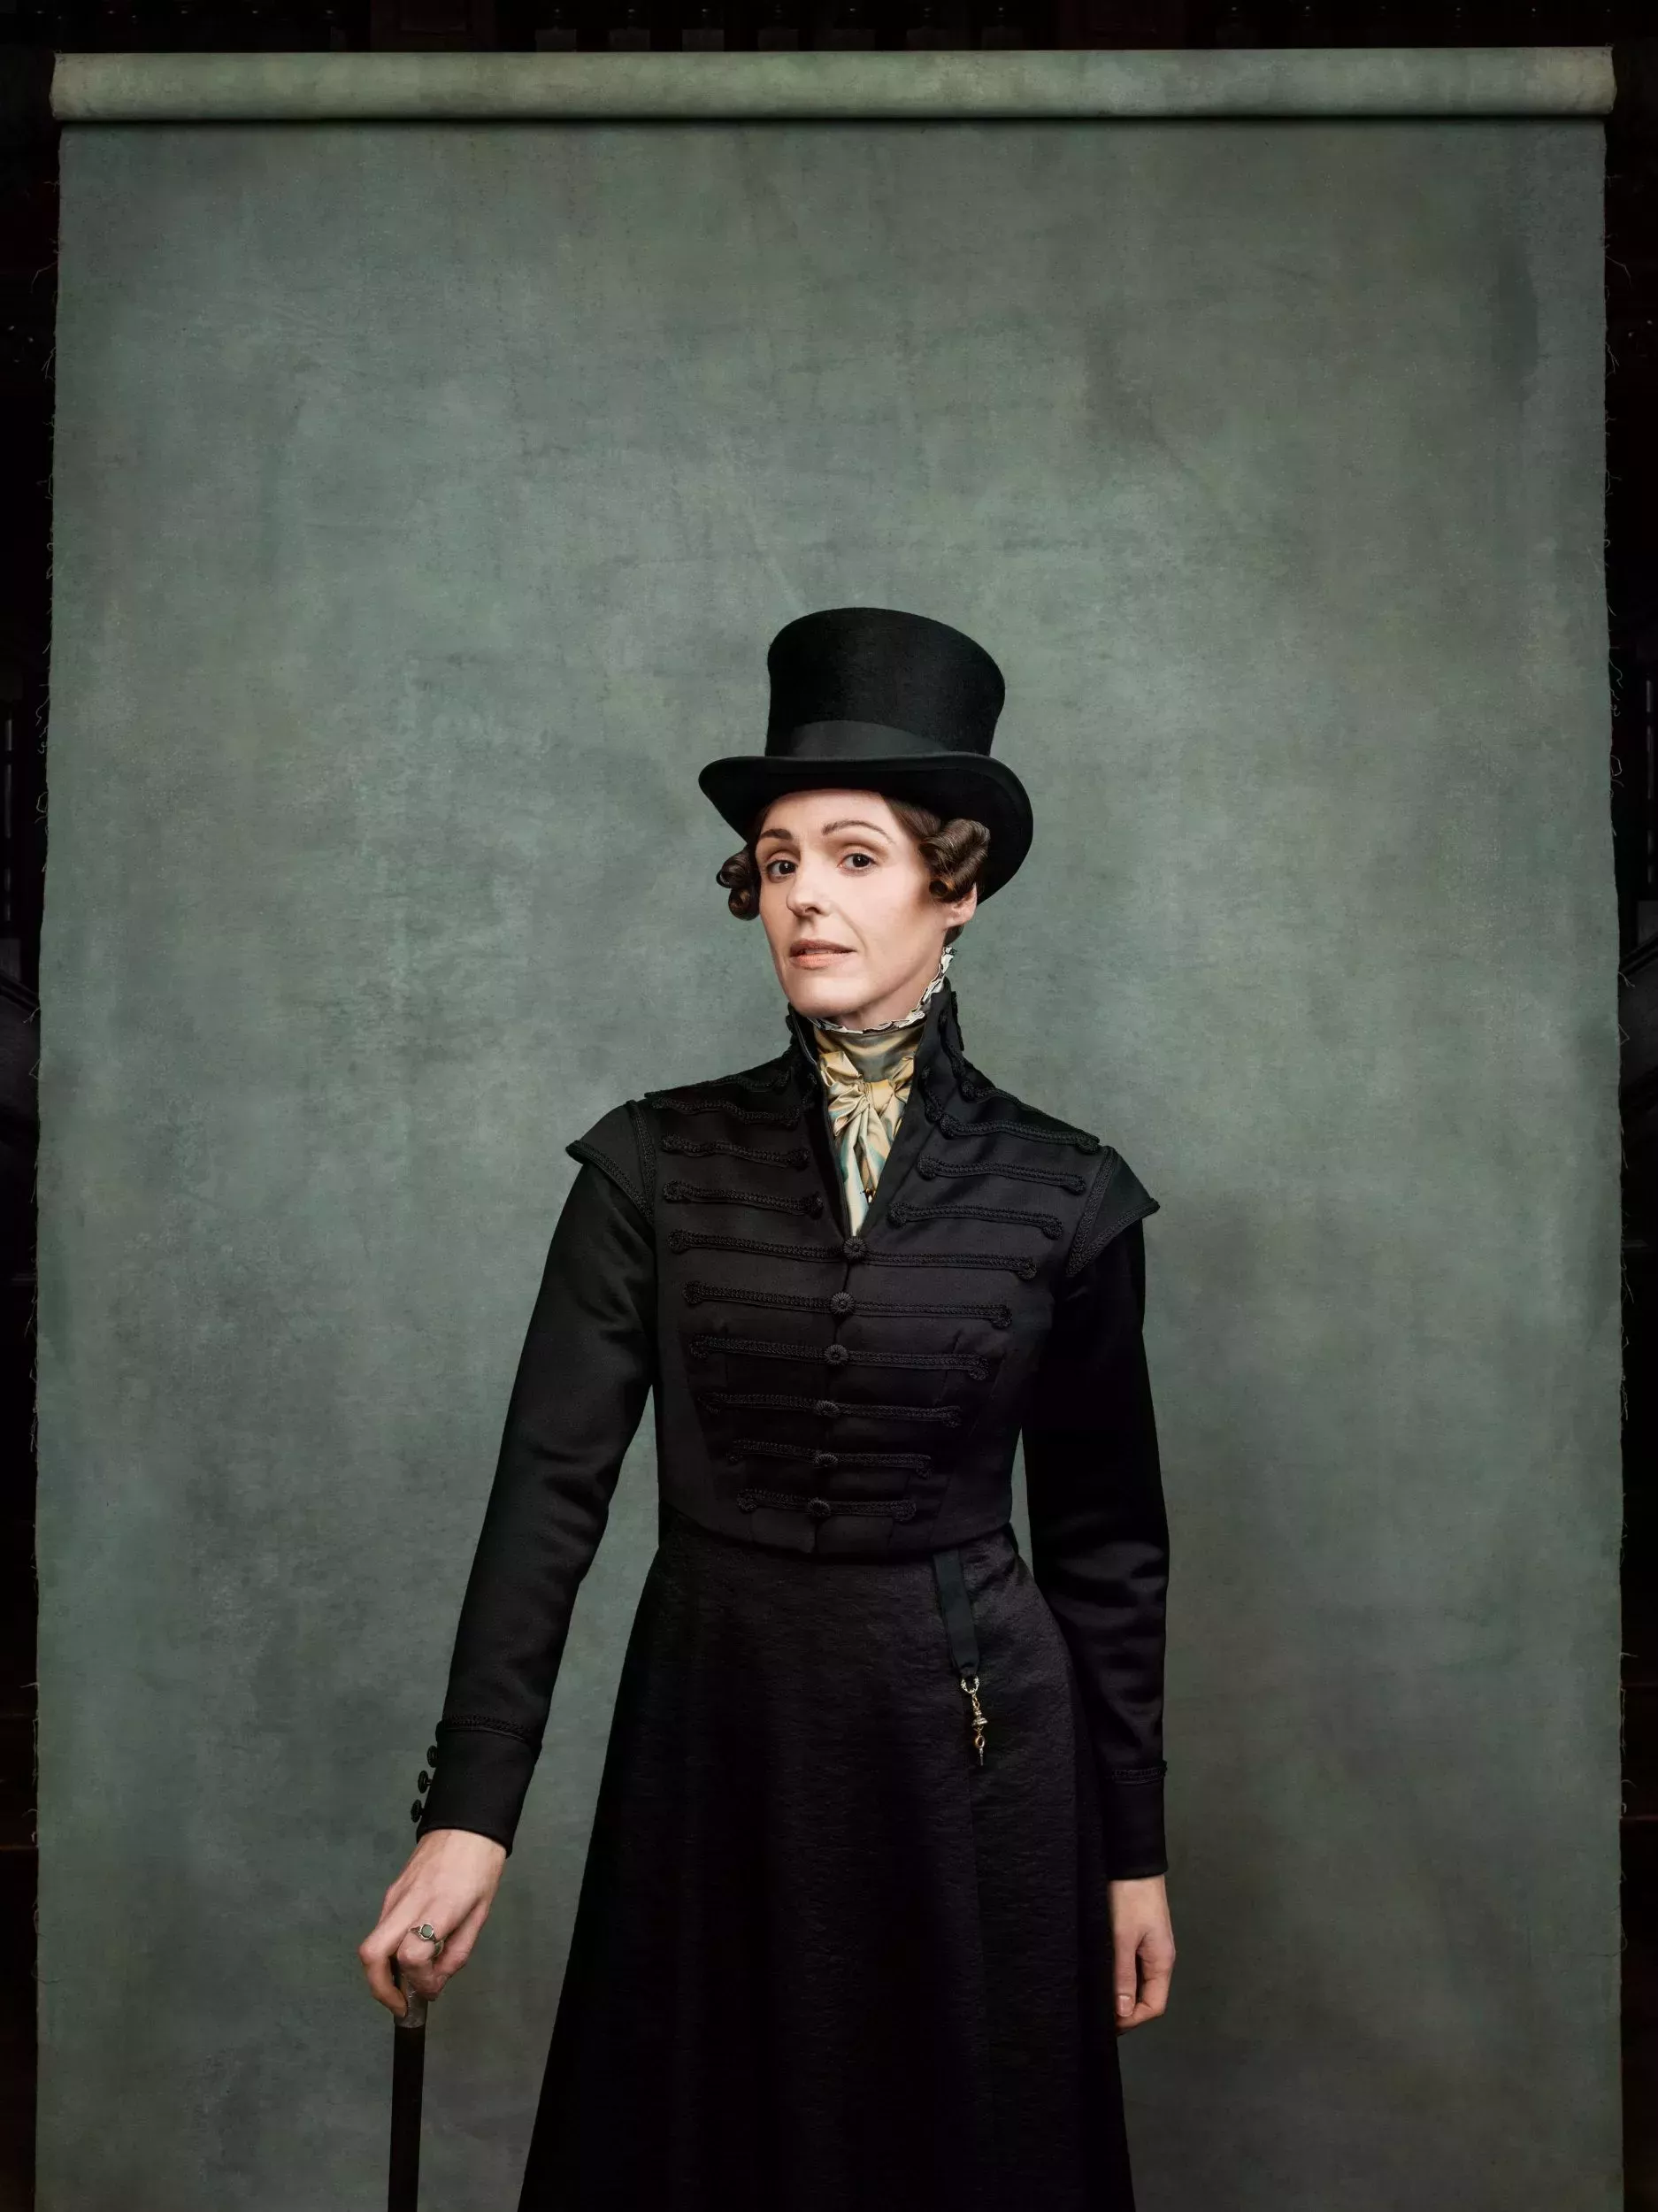 Los fans de Gentleman Jack comparten formas inspiradoras y significativas en las que la historia de Anne Lister ha cambiado sus vidas